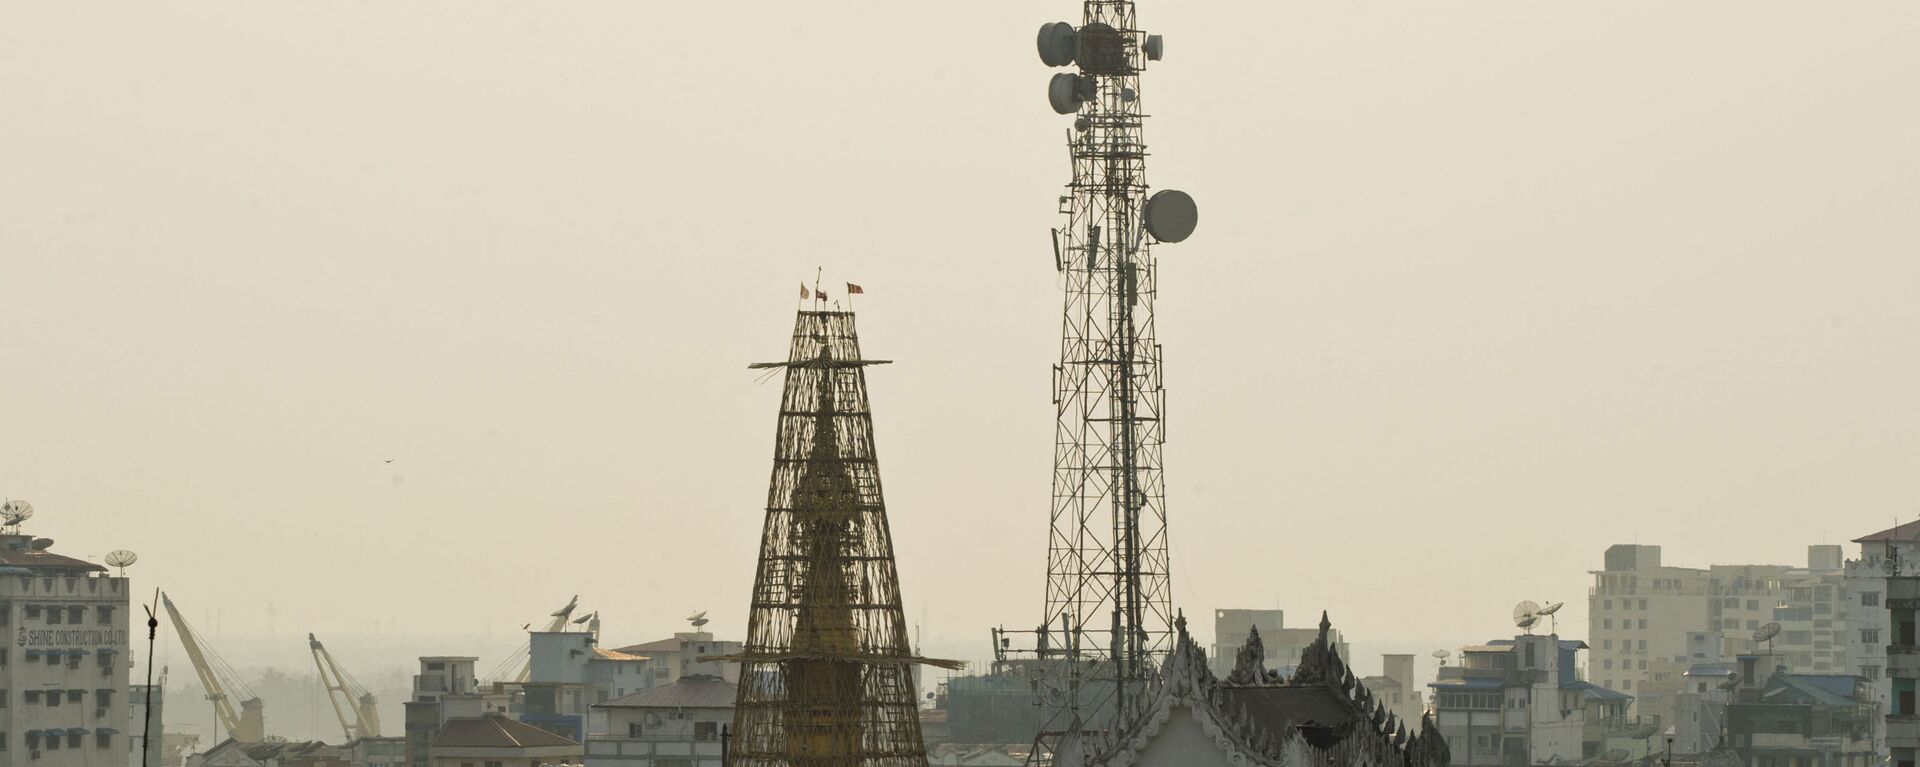 Tháp viễn thông ở Myanmar - Sputnik Việt Nam, 1920, 09.12.2021